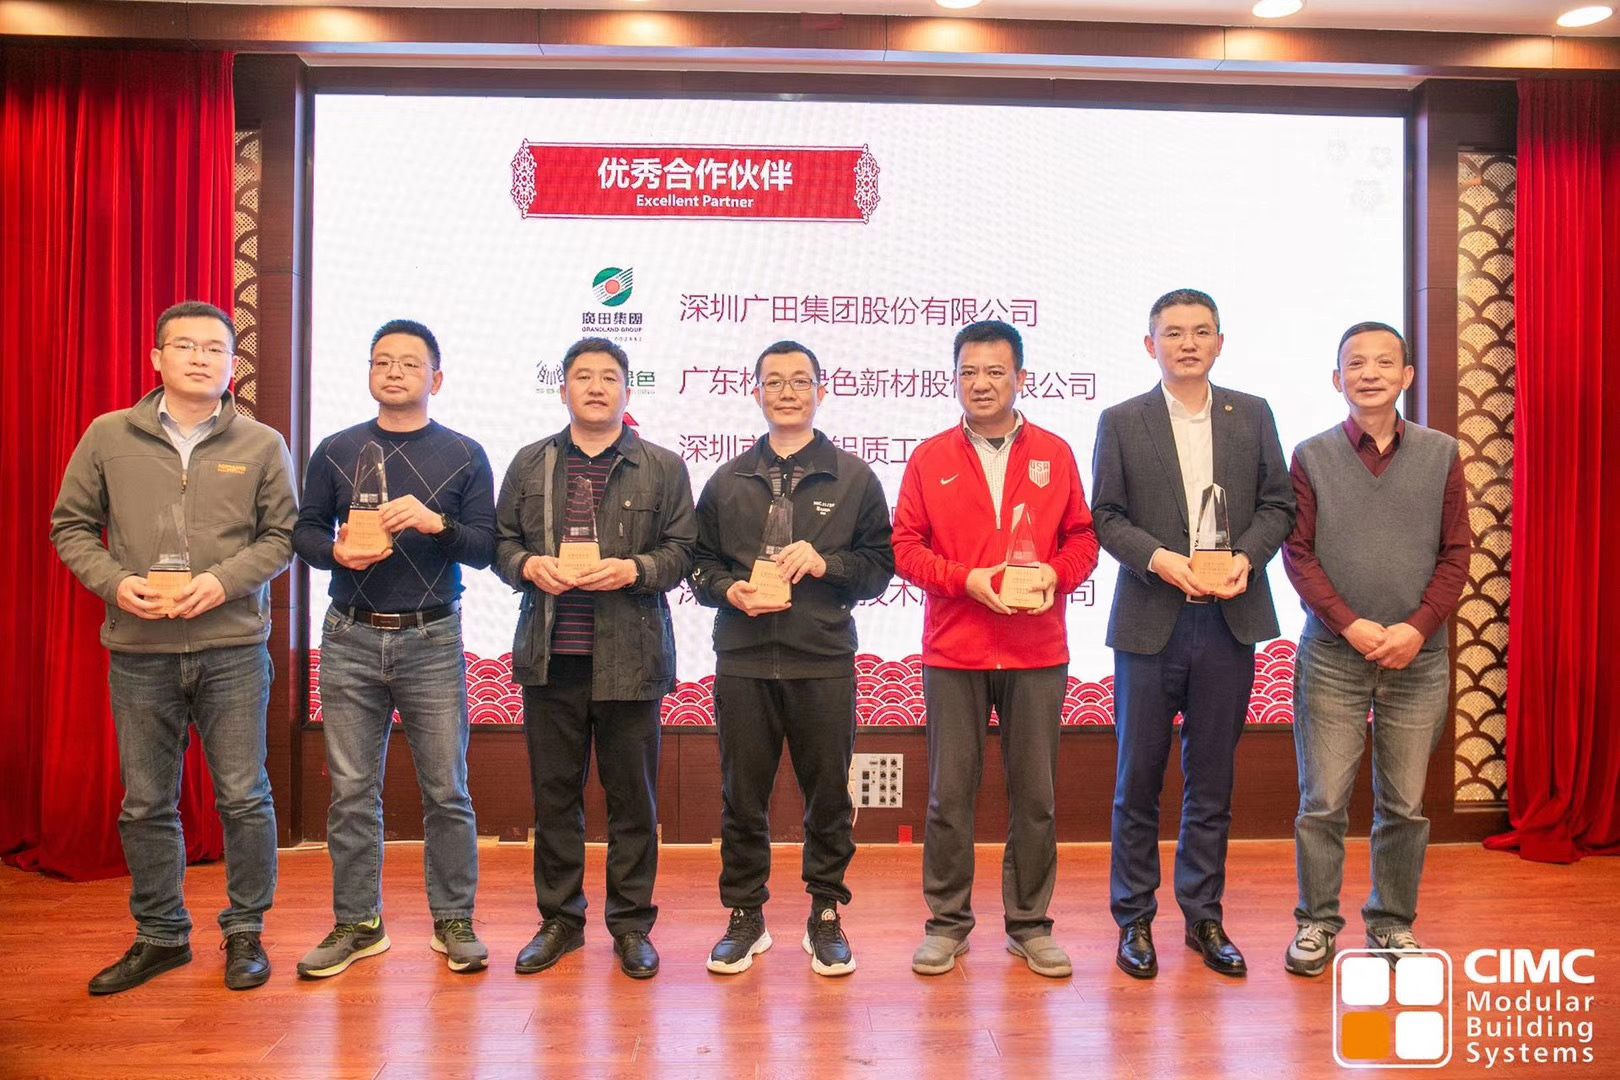 赢咖3平台被杭州广田集团评为优秀合作伙伴